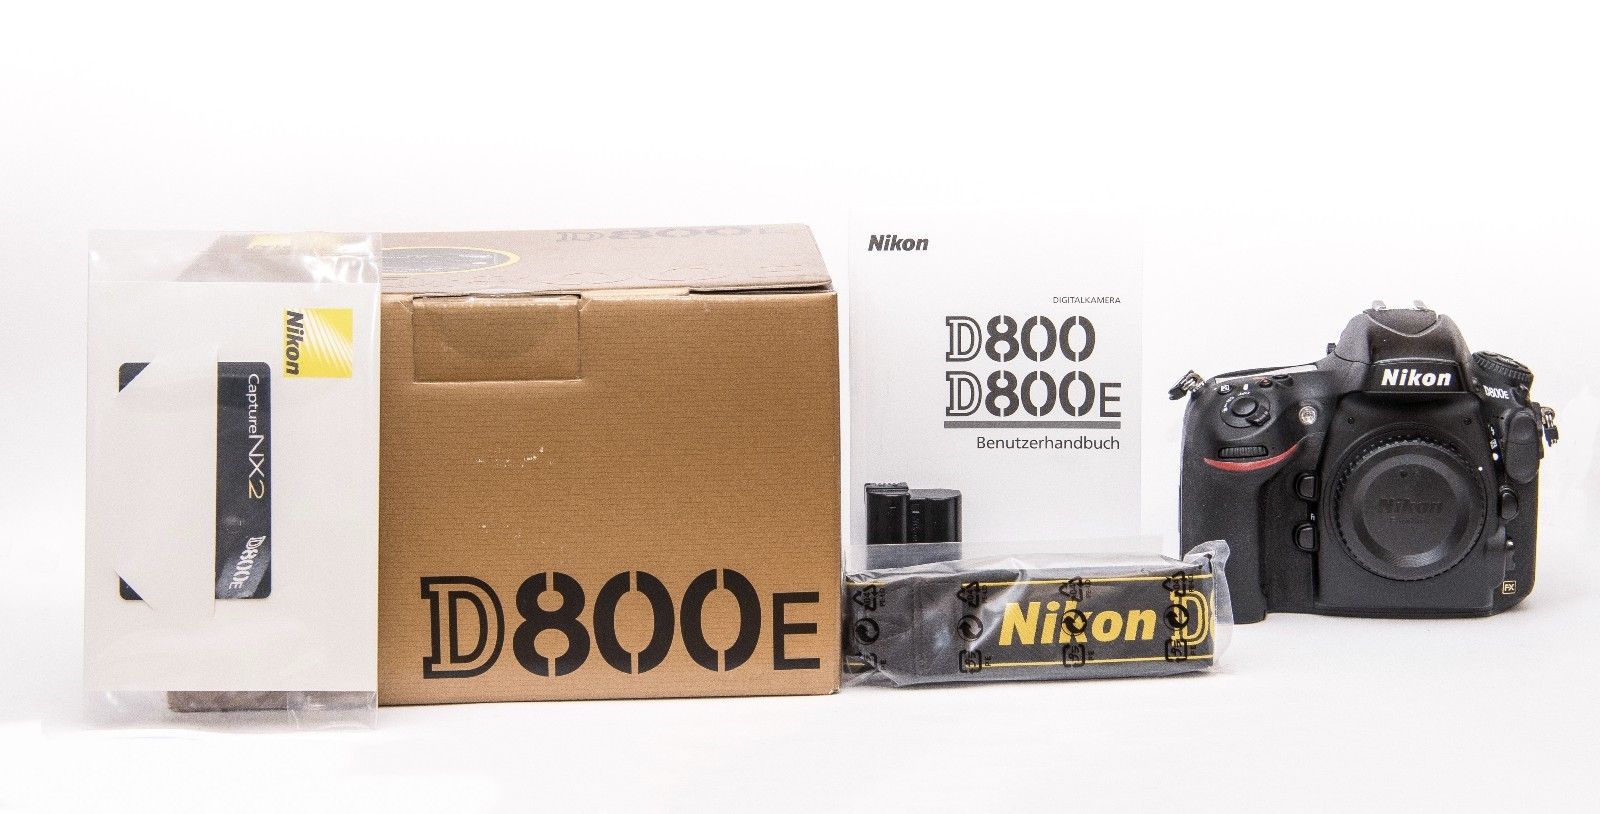 Nikon D800E Digitalkamera. Deutsche Ware (nur Gehäuse)